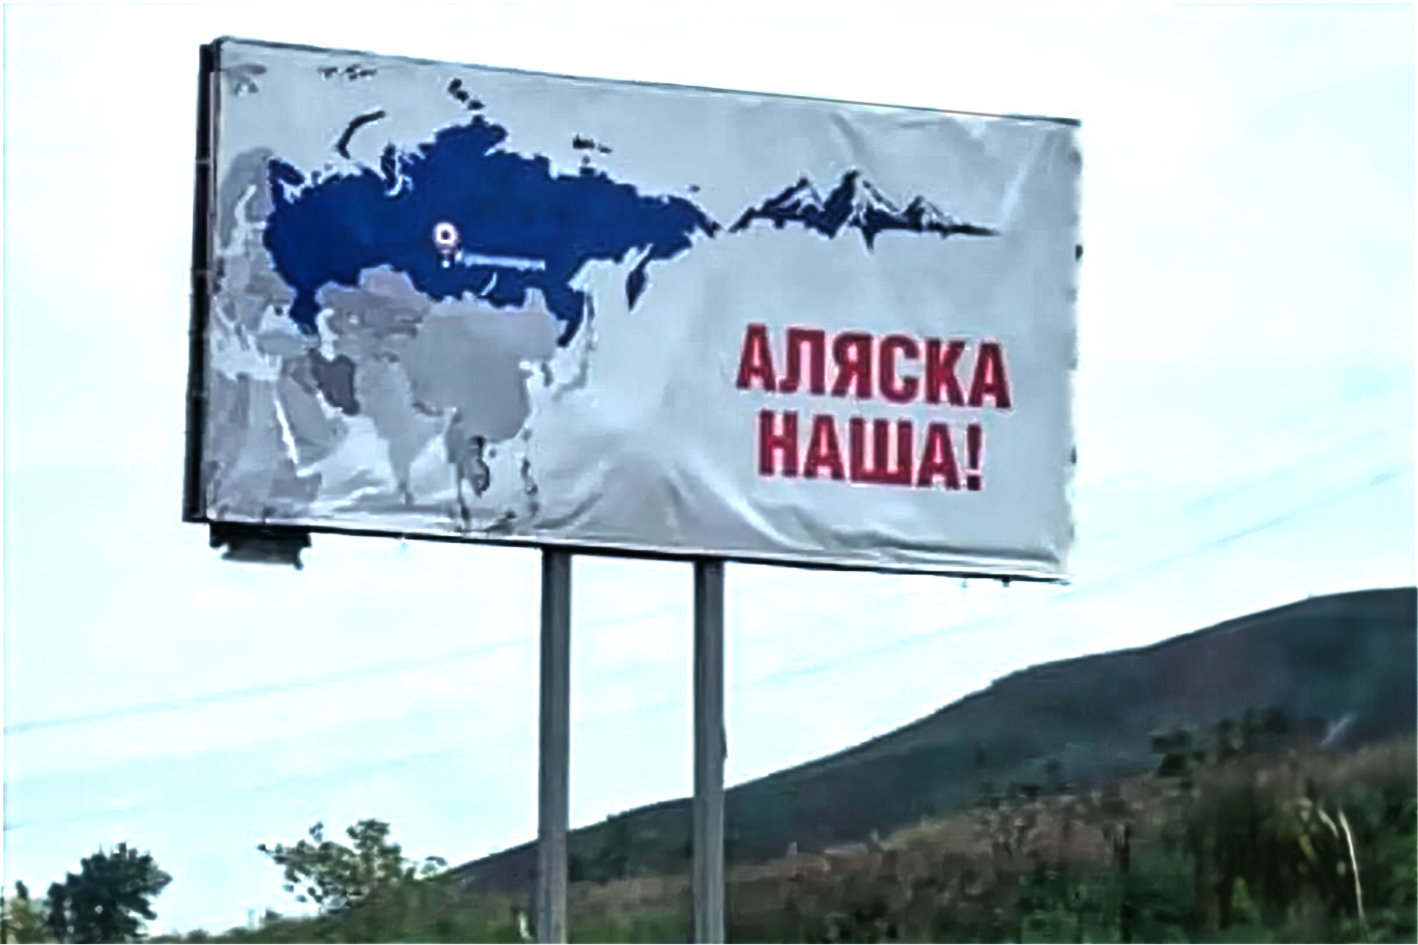 W 2022 r. internauci aktywnie dzielili się zdjęciem zamówionego przez prywatną osobę bilbordu w Krasnojarsku, na którym widniał napis „Alaska nasza”.